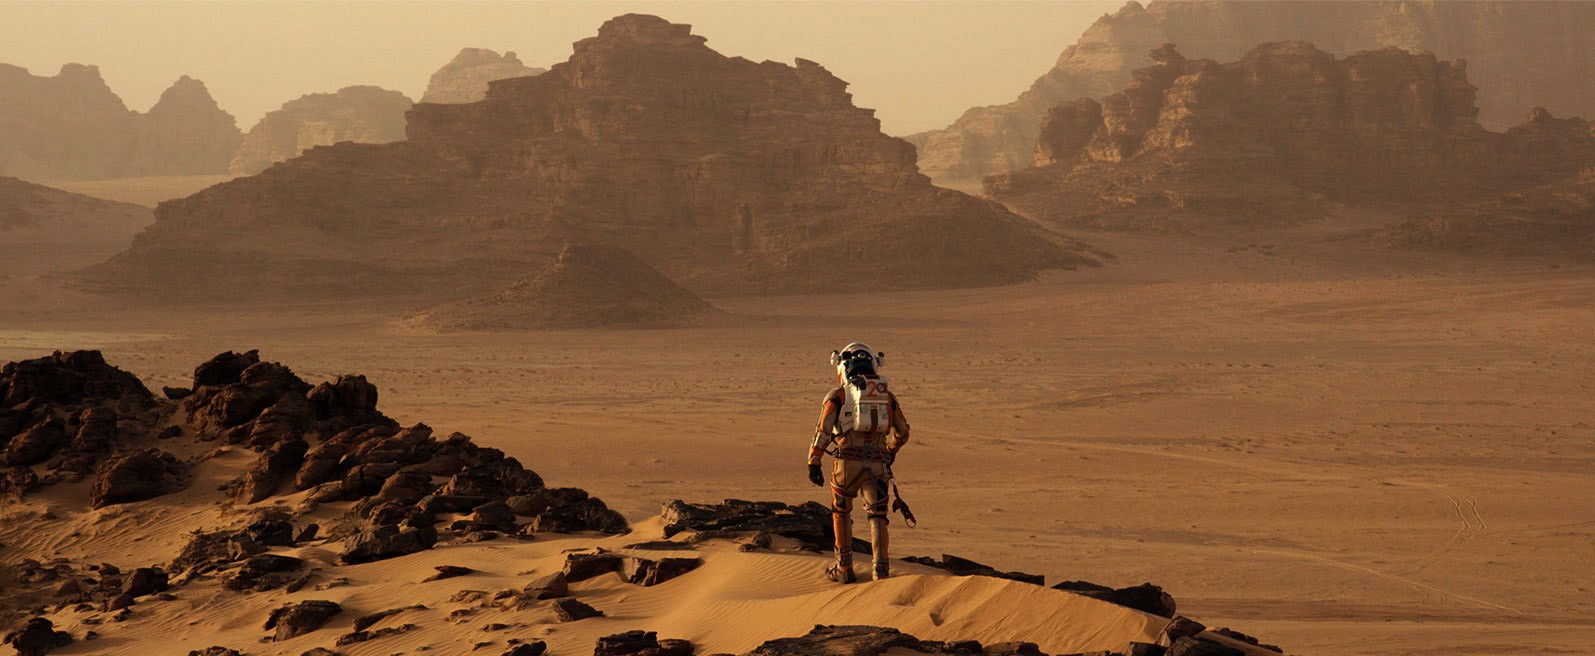 Лететь в максимум солнечной активности и не дольше четырех лет: определены безопасные время и длительность экспедиции к Марсу